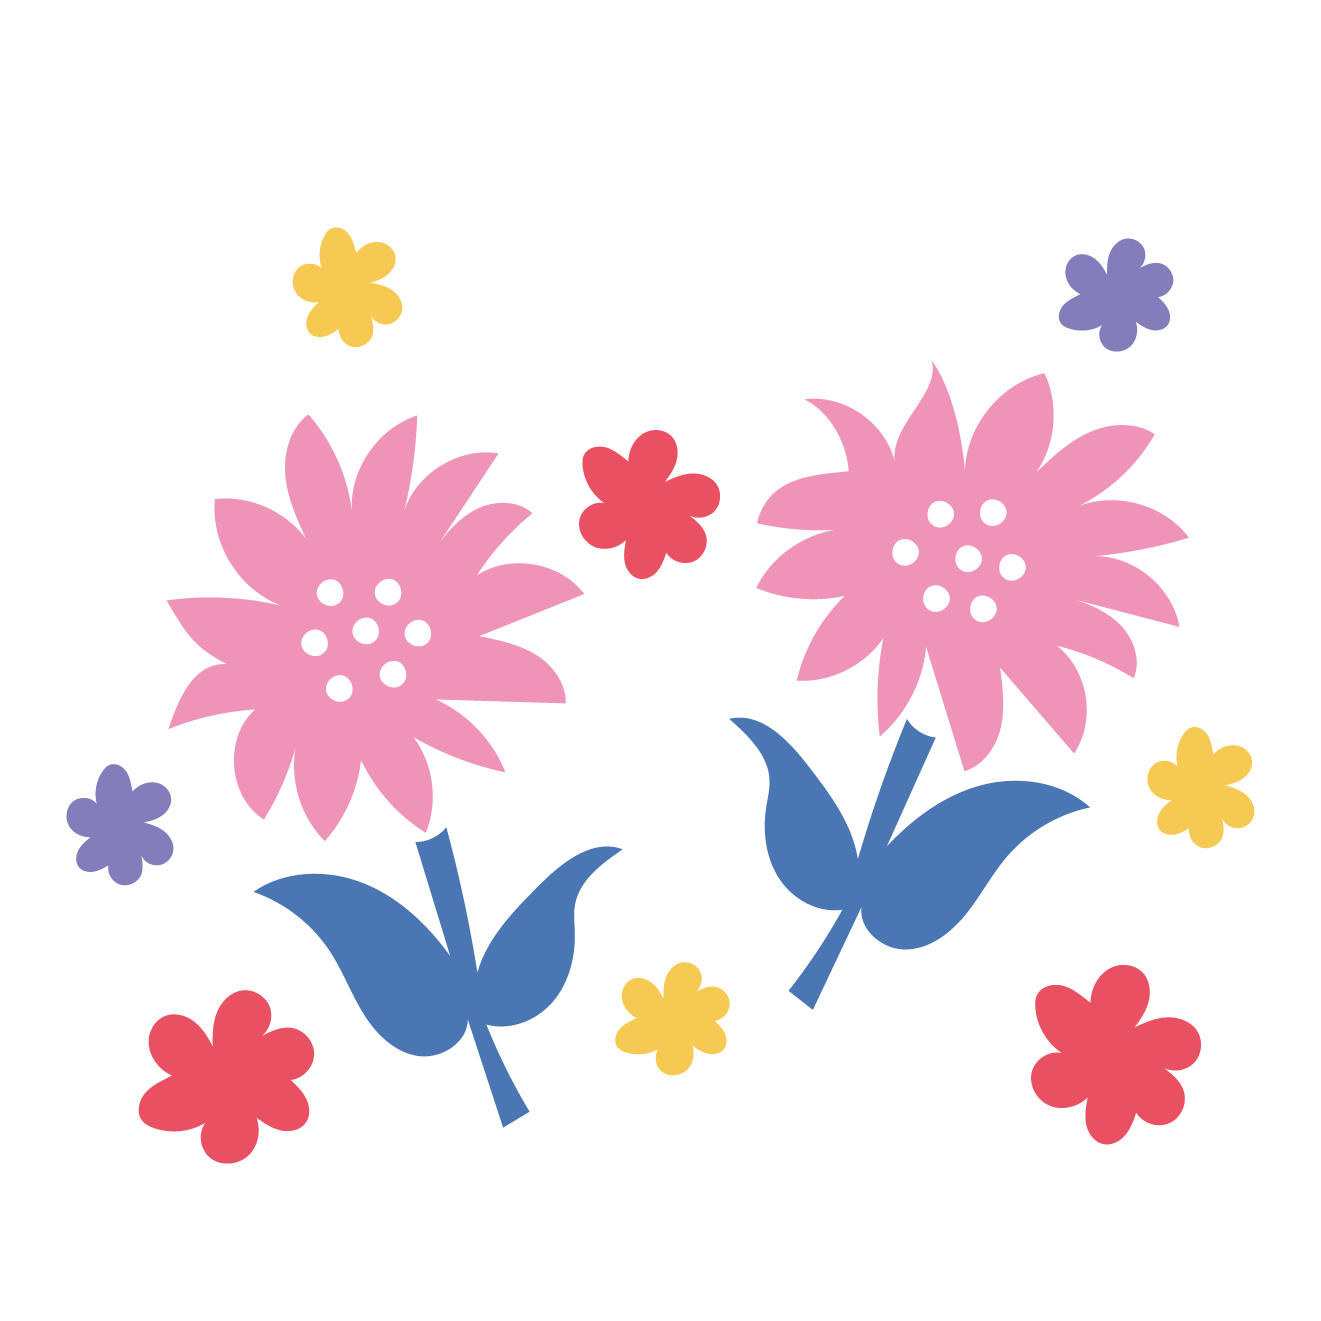 かわいい♪お花のワンポイントデザイン イラスト 商用フリー(無料)のイラスト素材なら「イラストマンション」